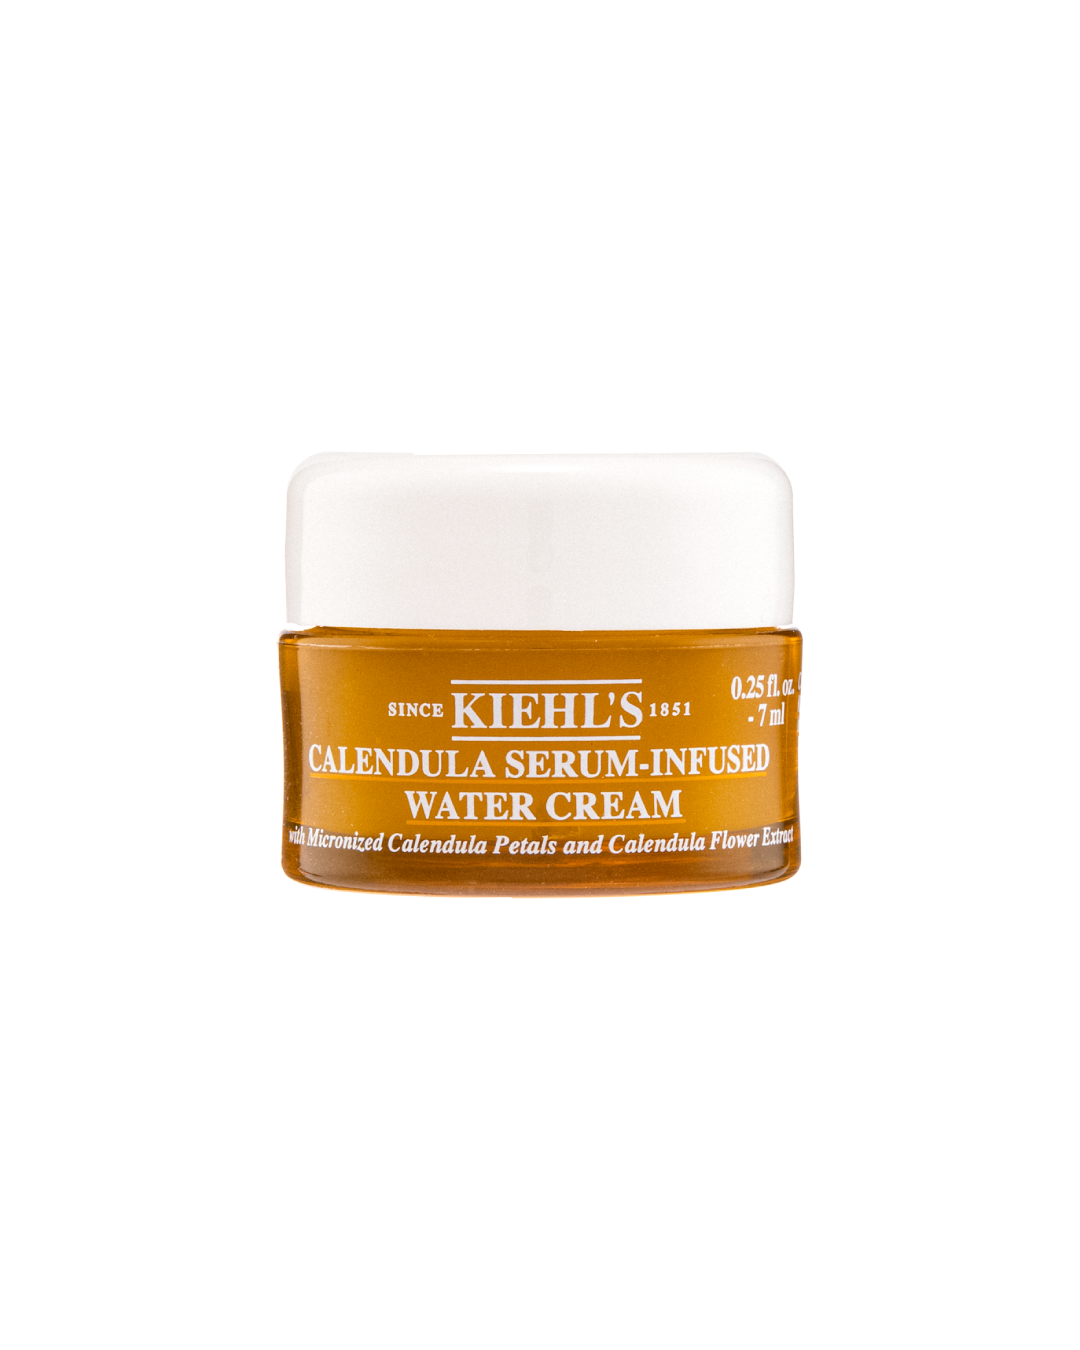 Kiehl's Calendula Serum-Infused Water Cream (7ml) - Best Buy World Philippines